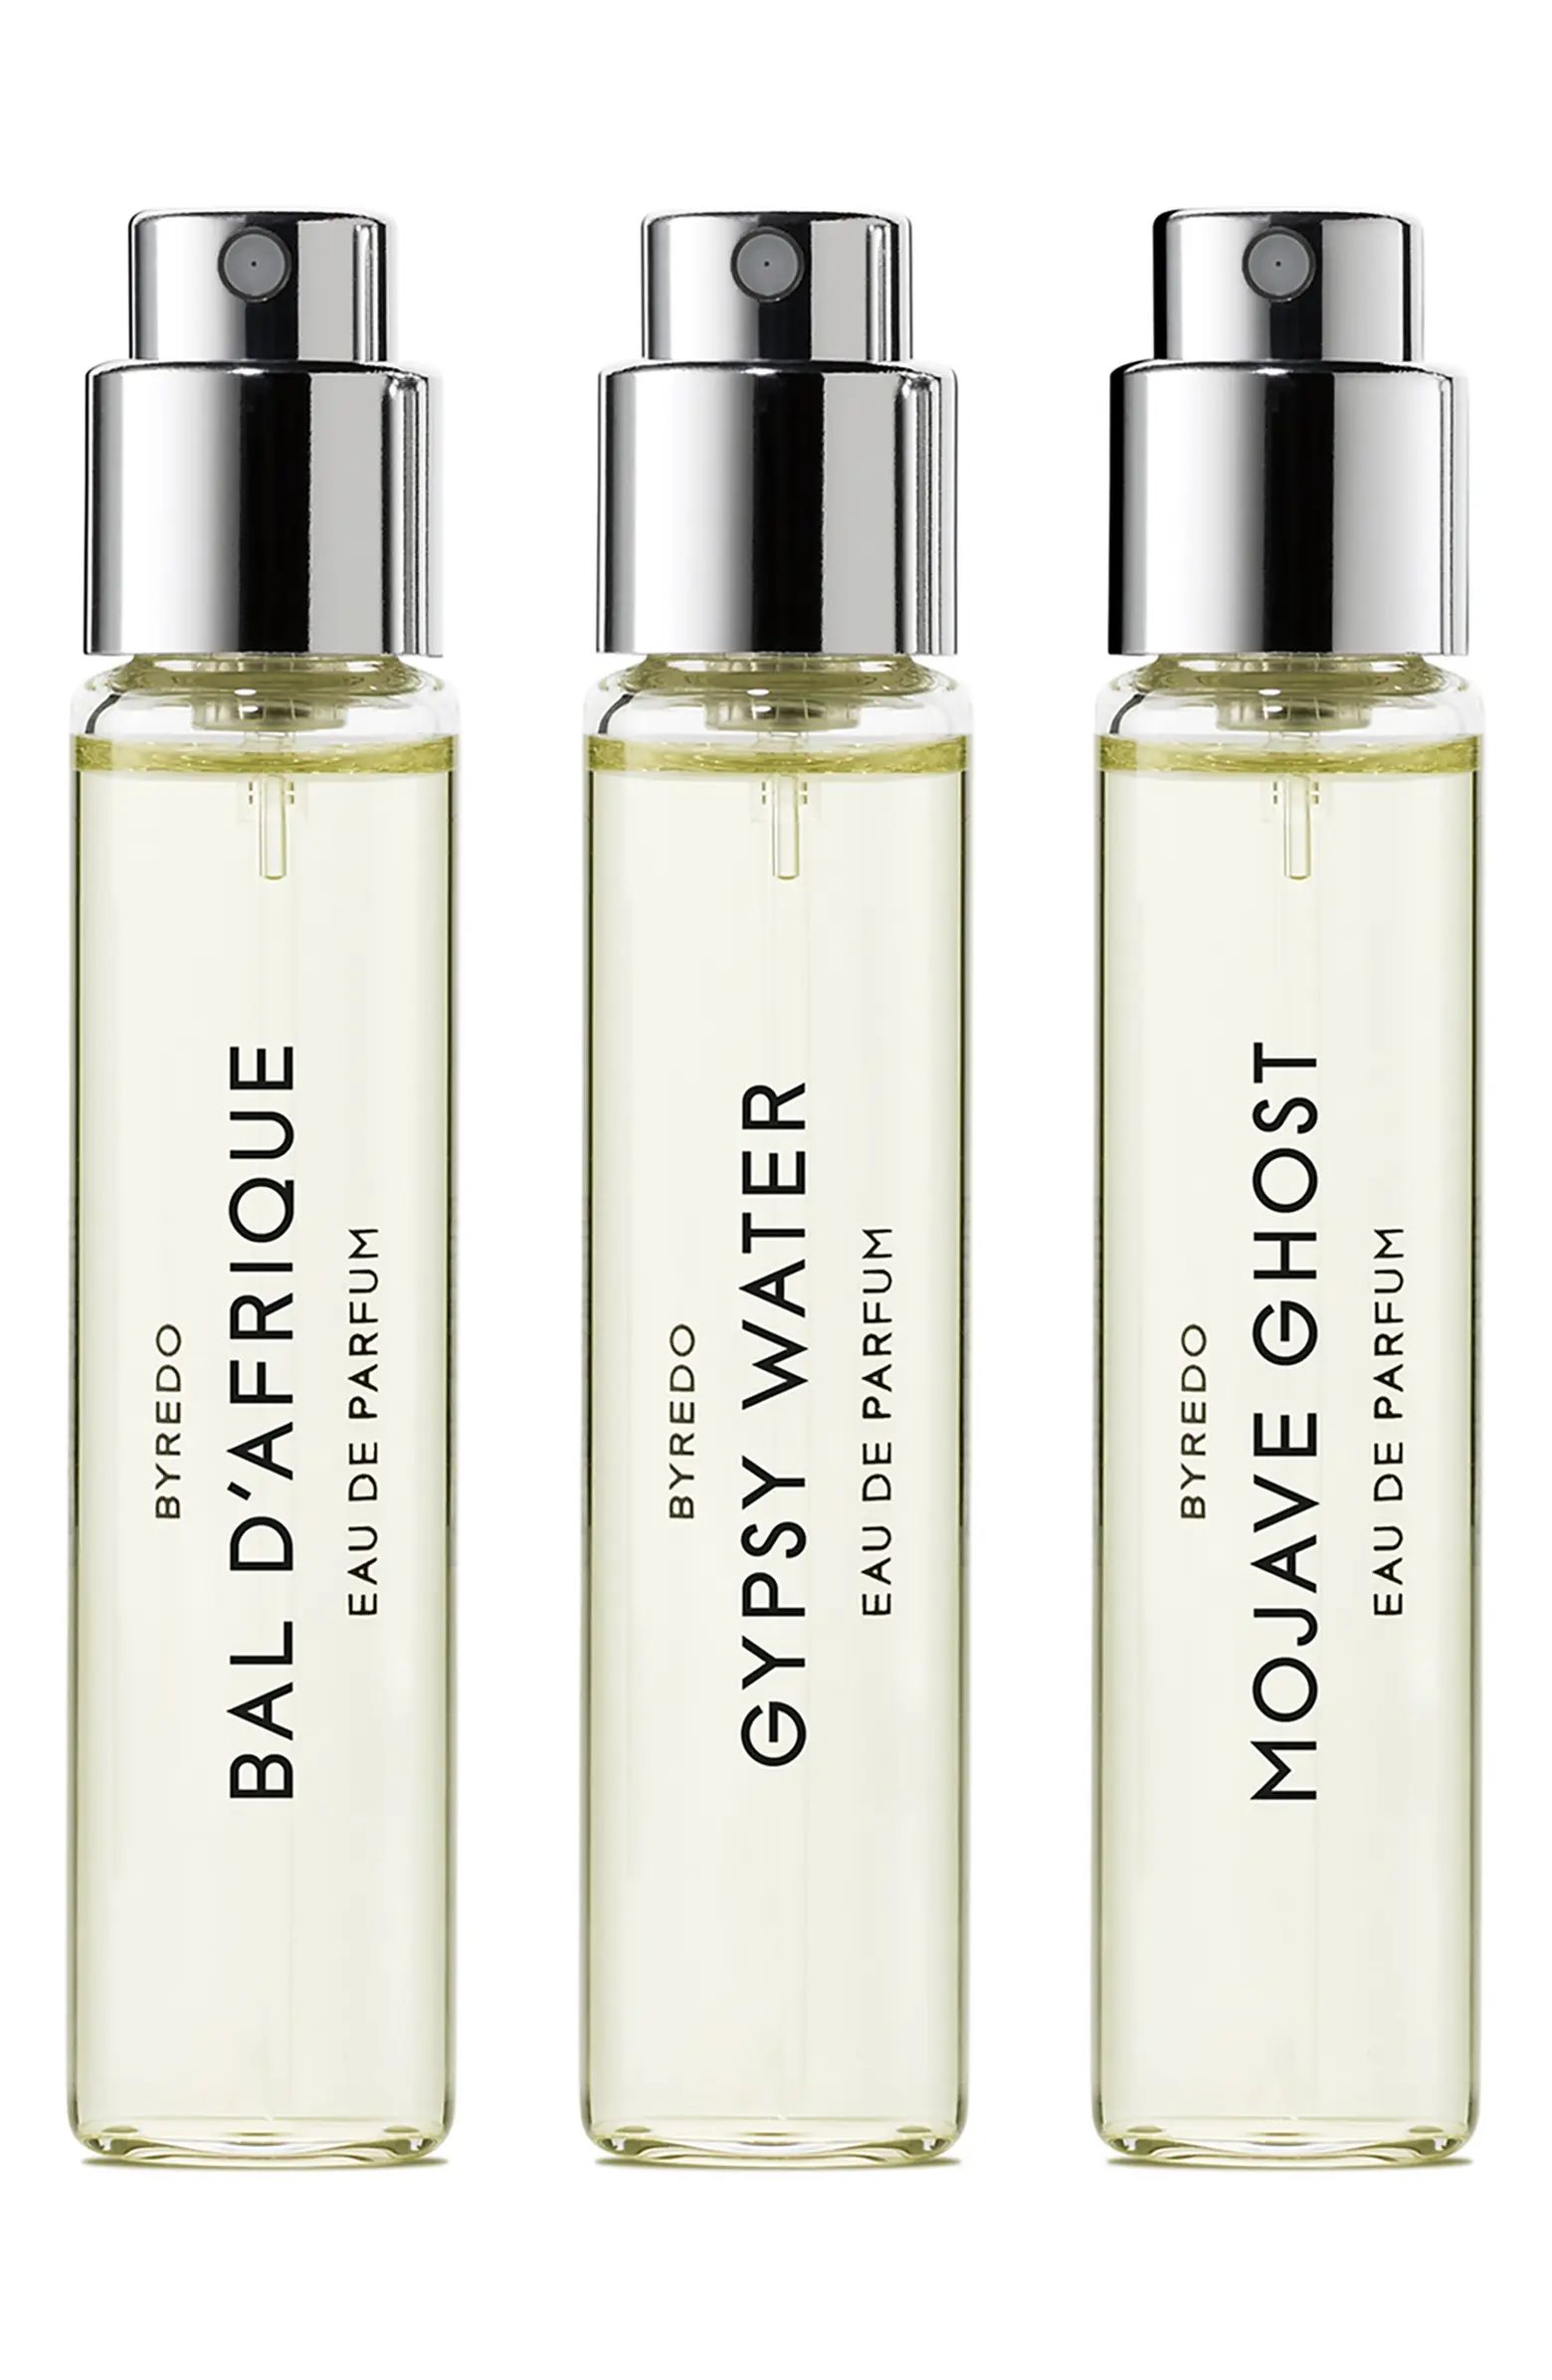 Iconic Selection Travel Size Eau de Parfum Set $120 Value | Nordstrom